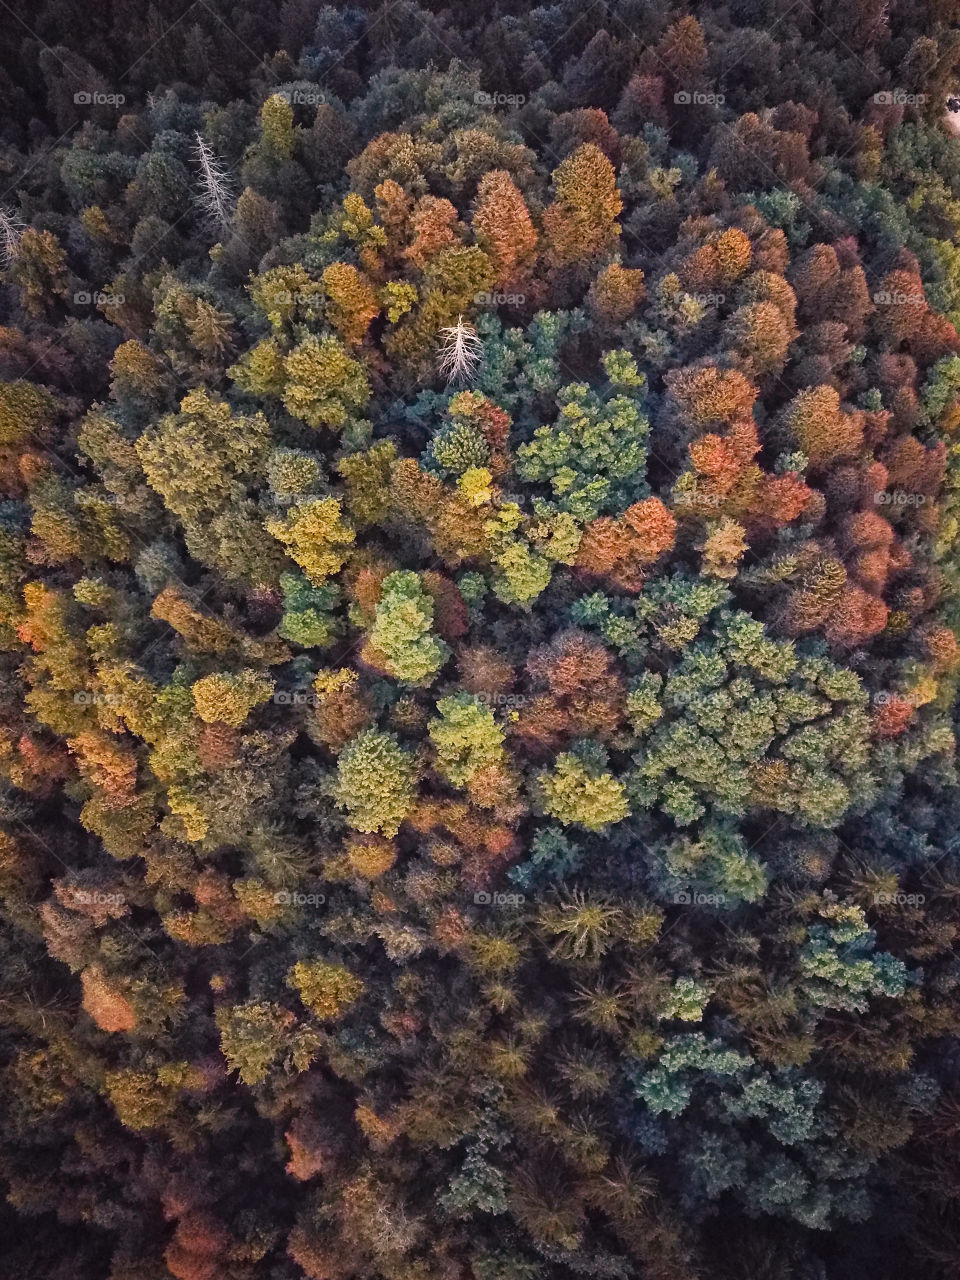 Autumn trees 